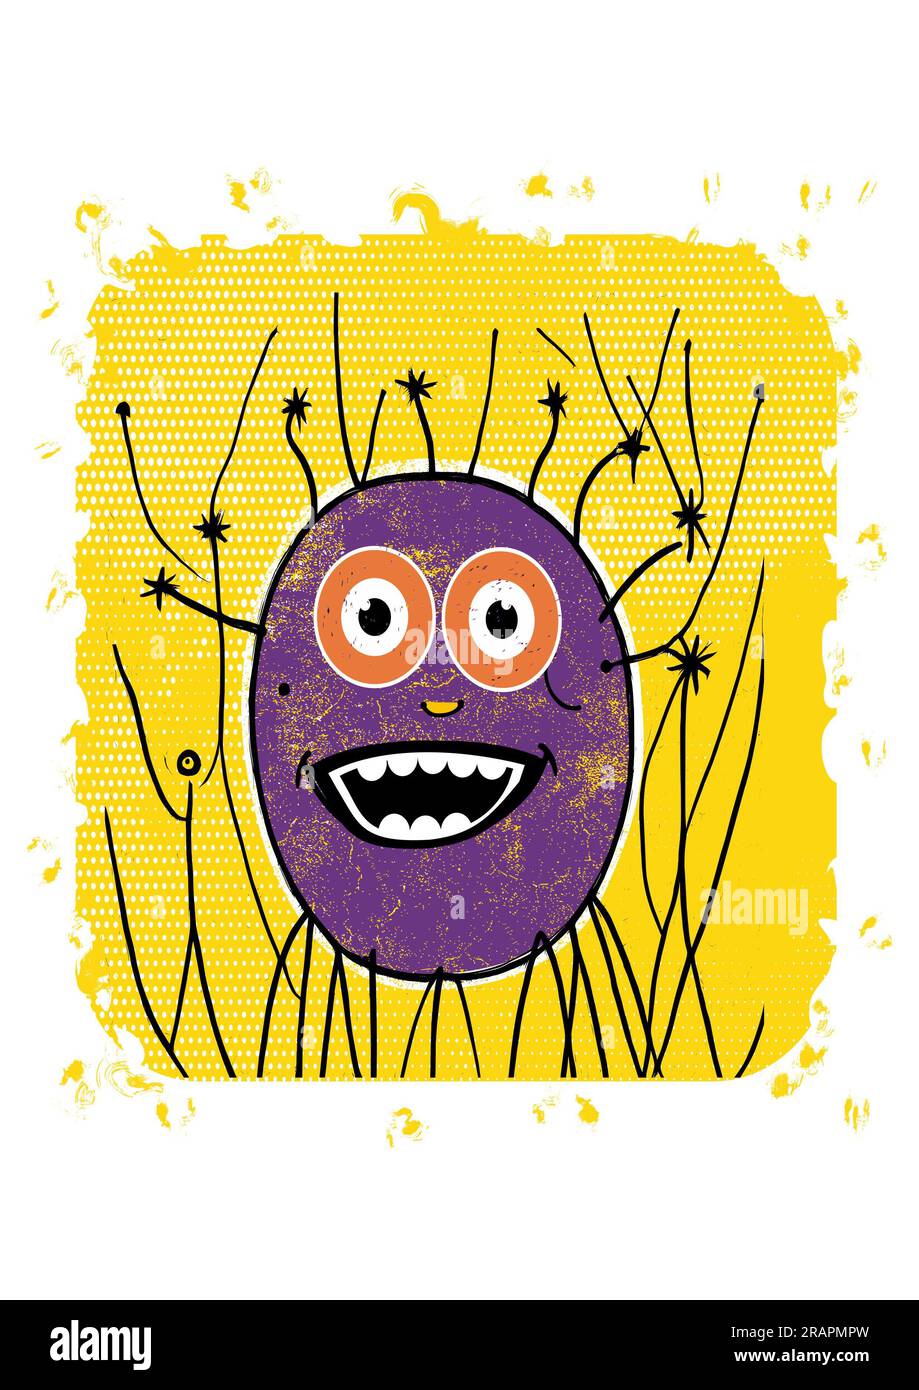 Drôle rond monstre amical , créature souriant joyeusement sur un fond jaune vif Banque D'Images